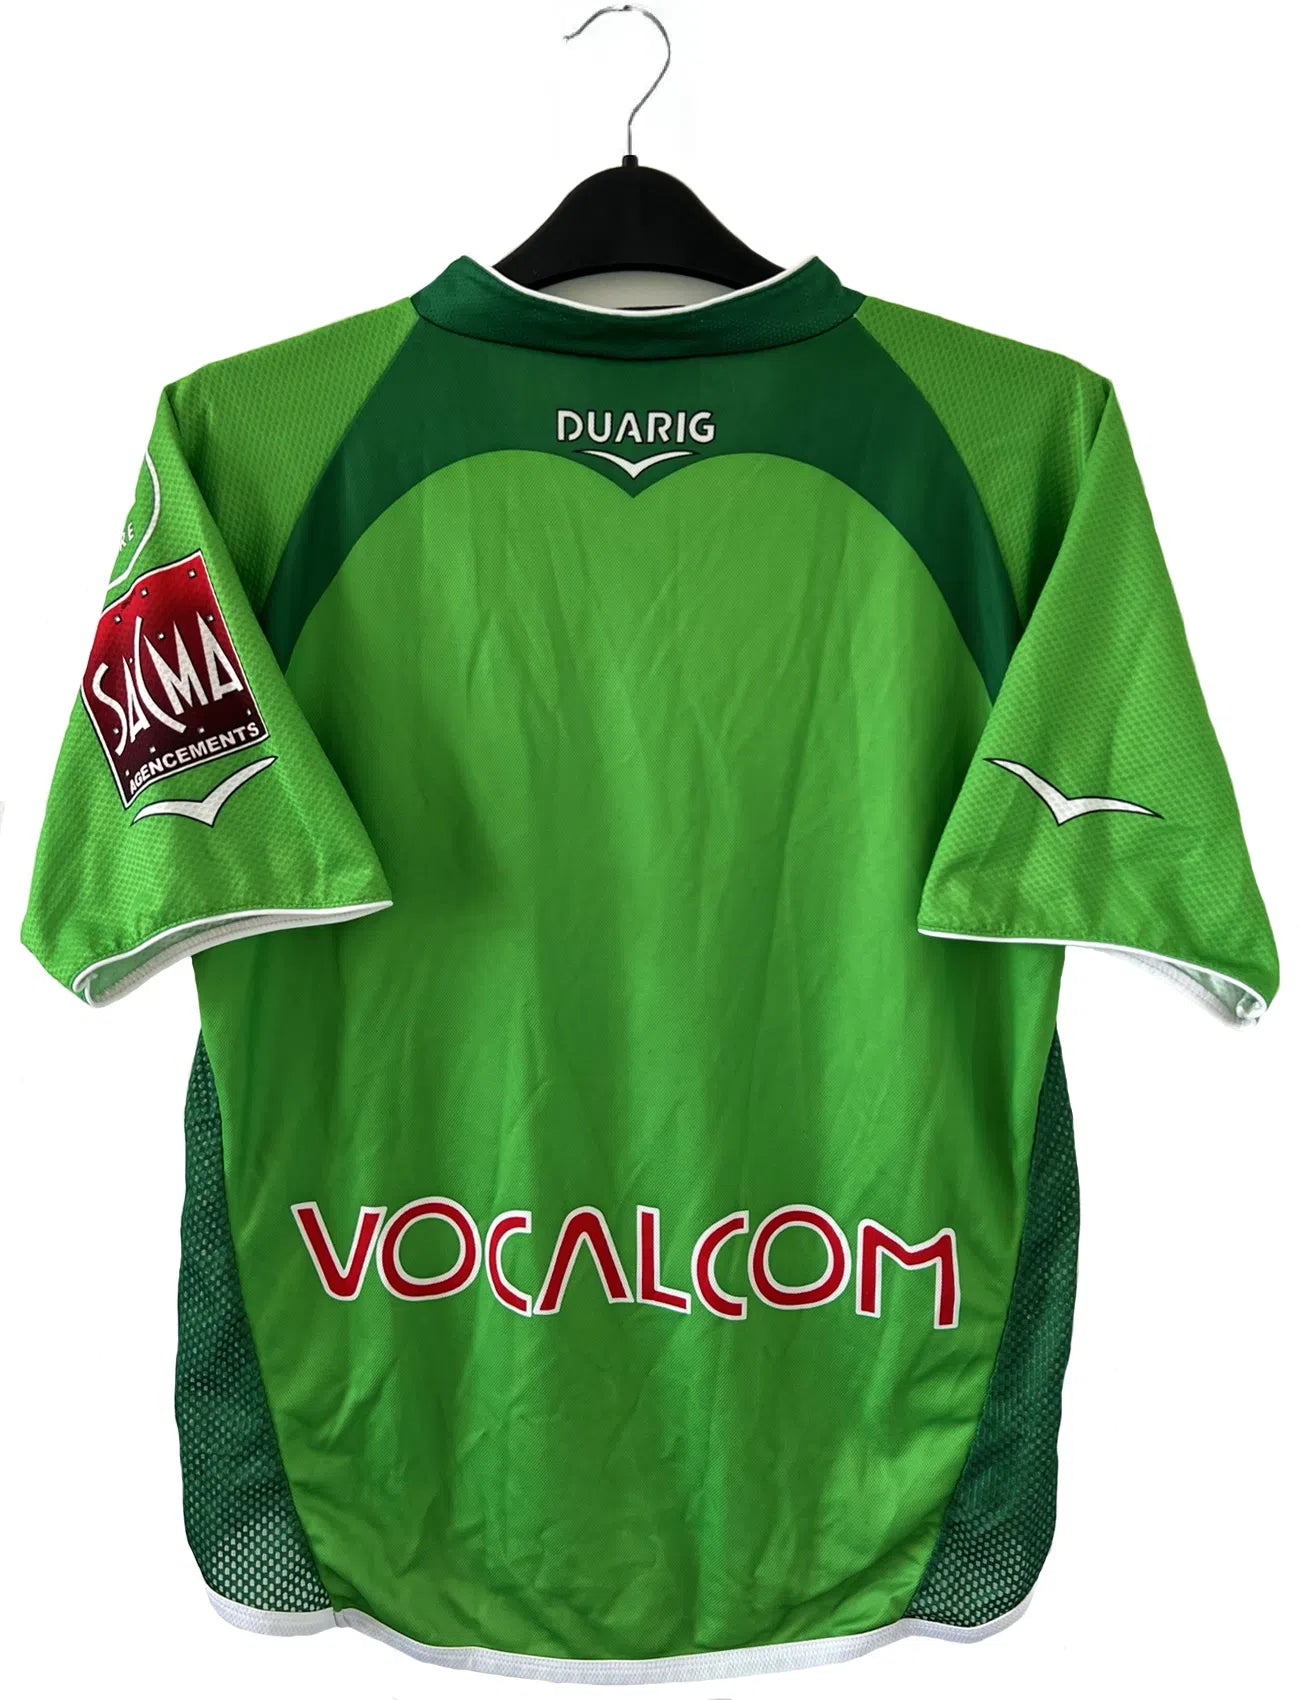 Maillot de foot vintage domicile de l'ASSE de la saison 2004-2005. Le maillot est de couleur vert et blanc. On peut retrouver l'équipementier duarig et le sponsor Konica Minolta. Il s'agit d'un maillot authentique